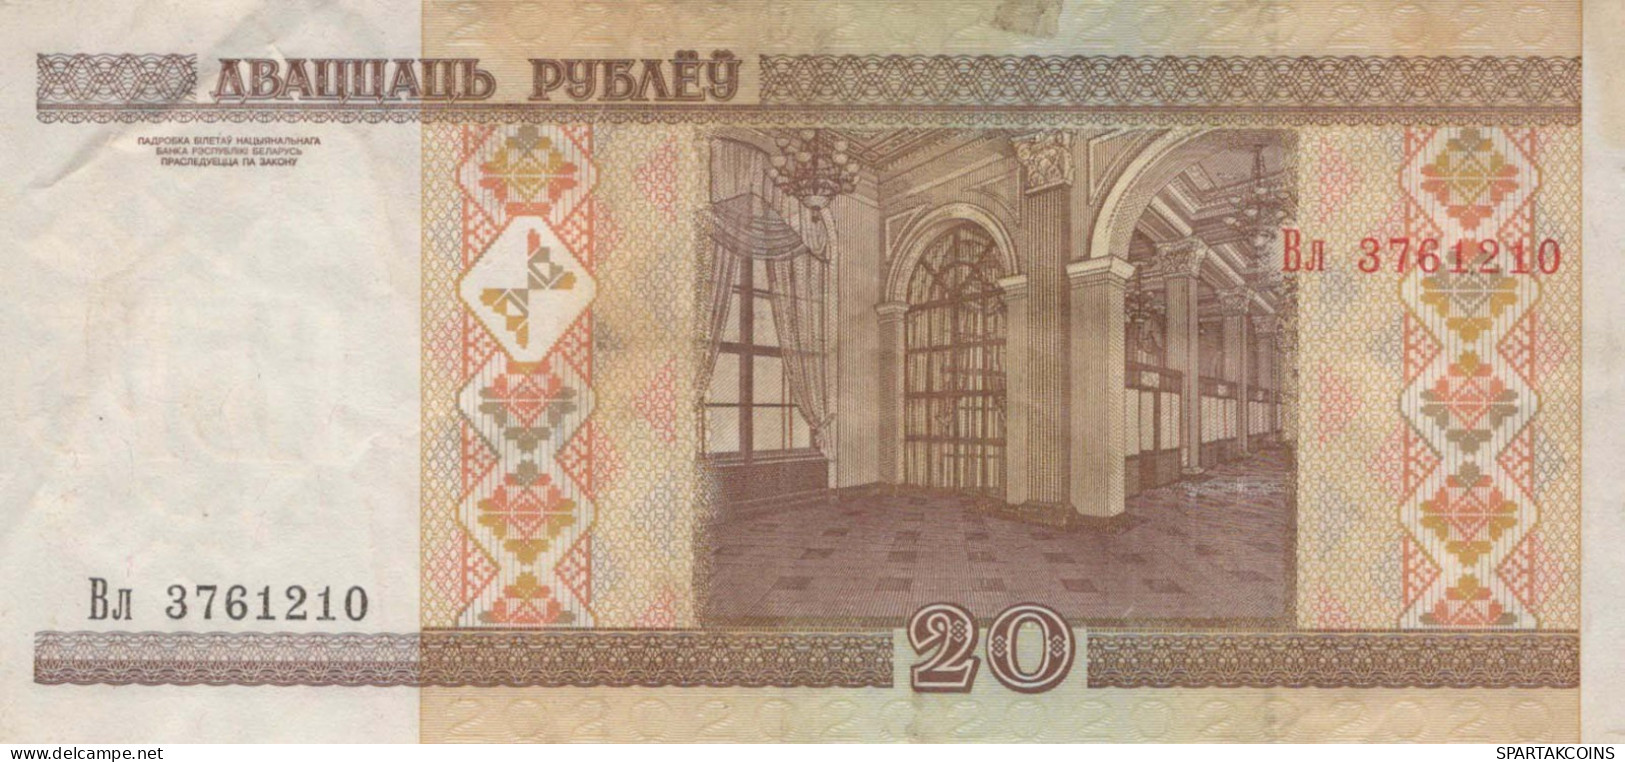 25 RUBLES 2000 BELARUS Papiergeld Banknote #PK597 - Lokale Ausgaben